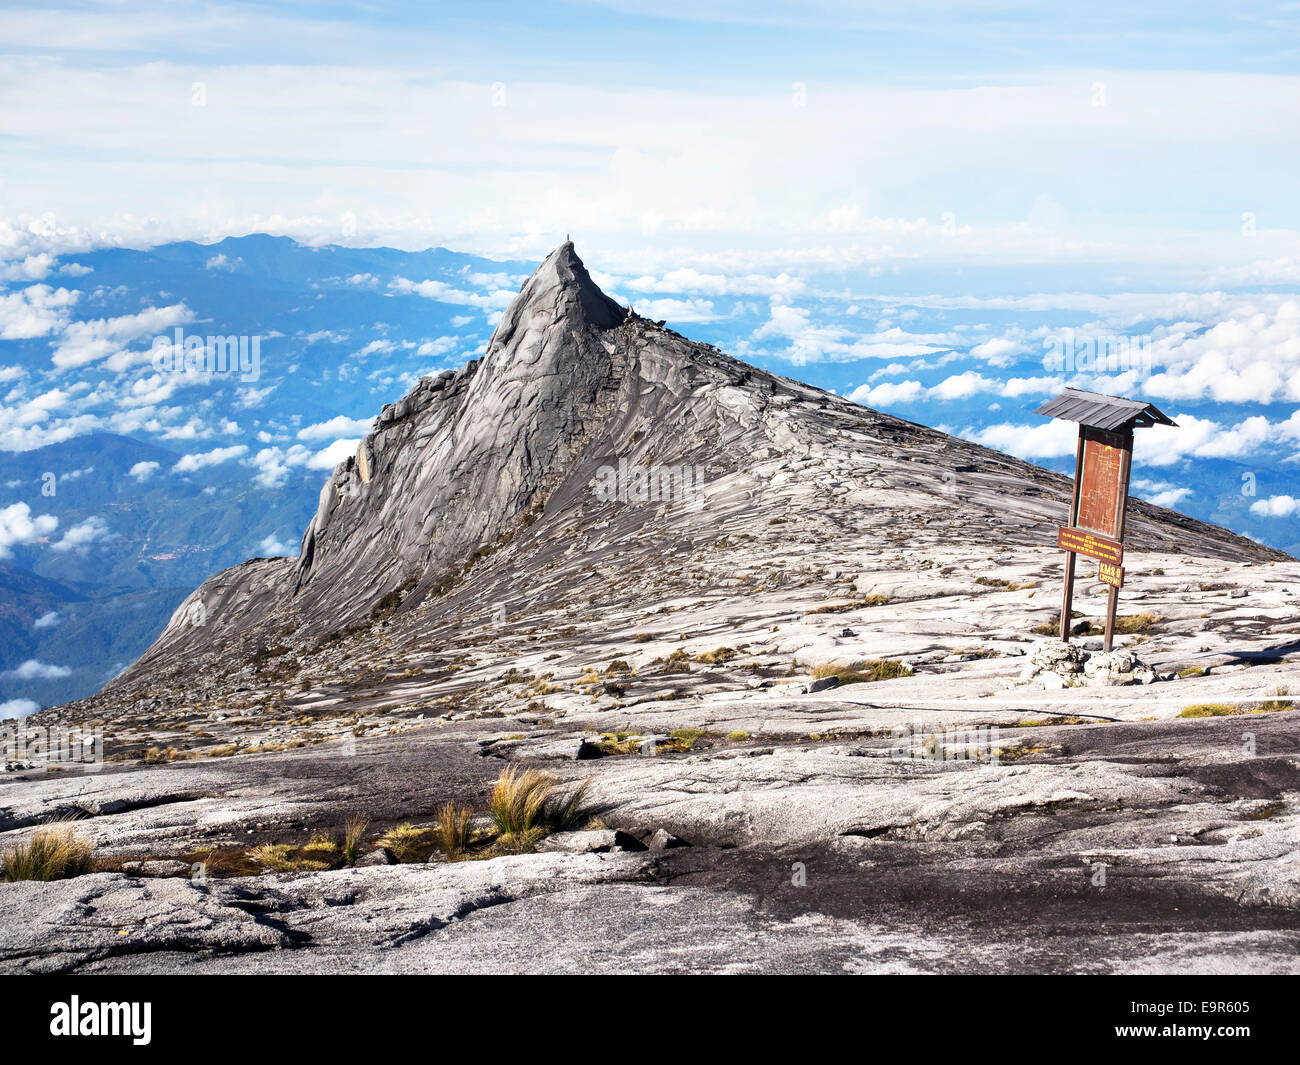 Le Mont Kinabalu, le plus haut sommet de l'archipel malais, Sabah, Malaisie Orientale. Banque D'Images